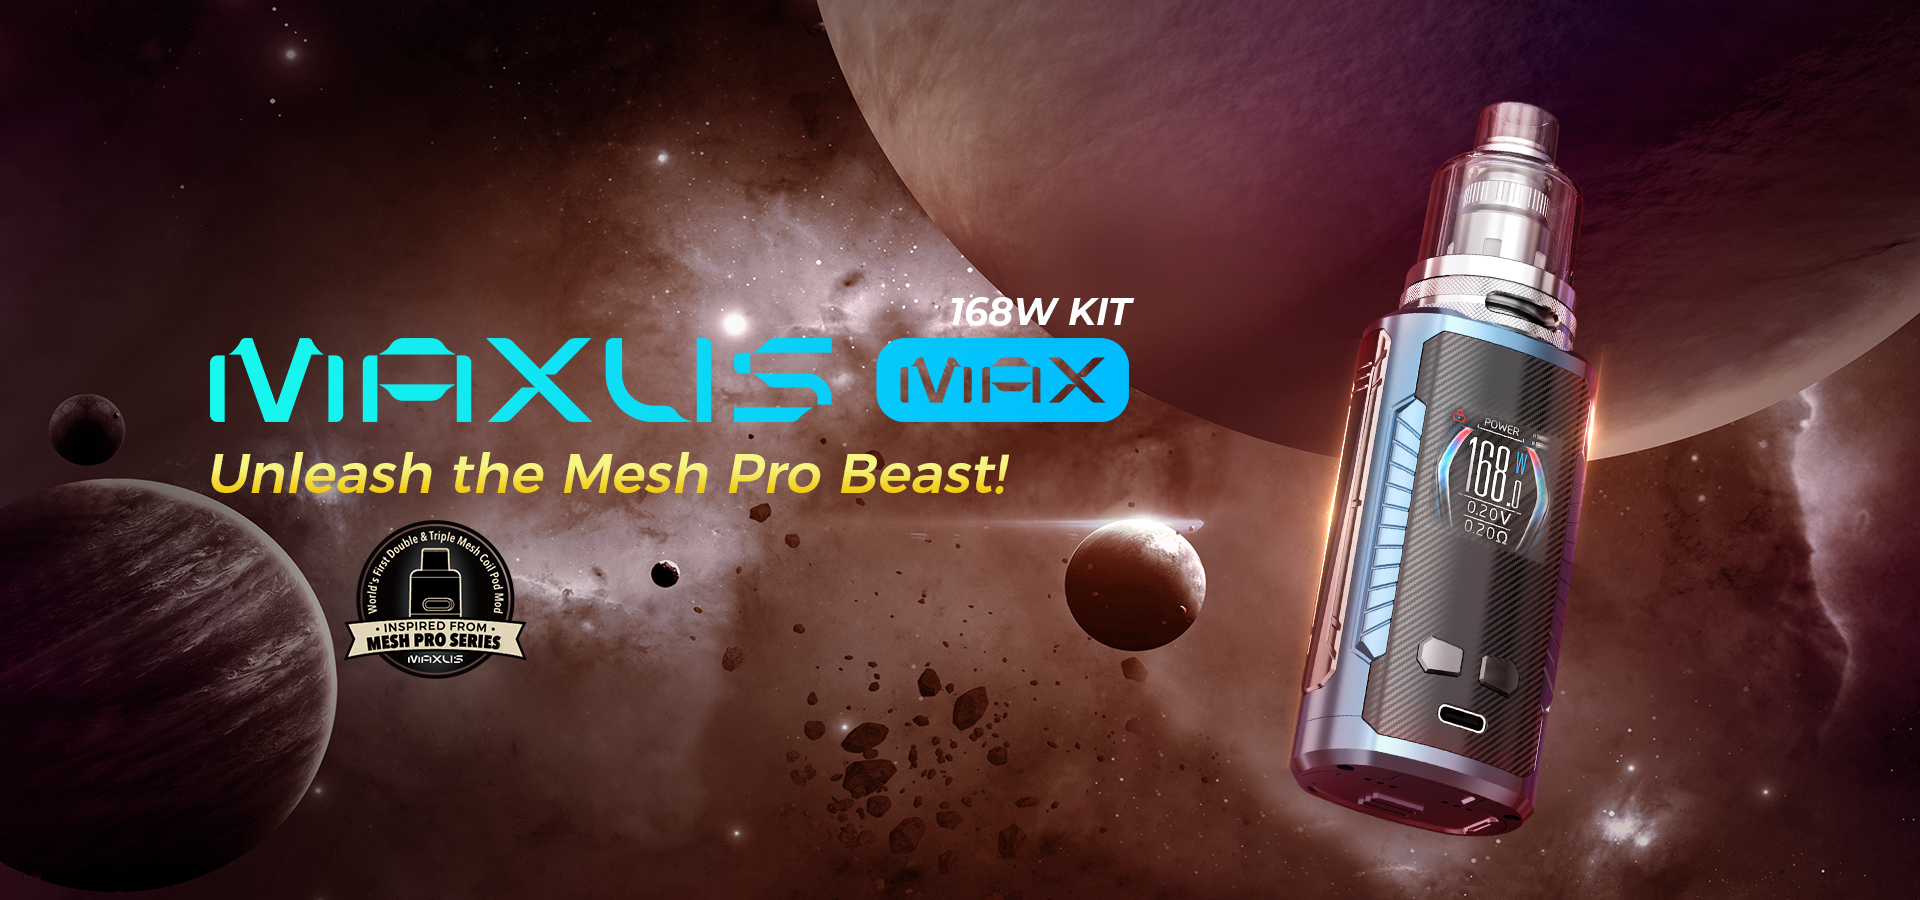 Freemax Maxus Max 168W Kit